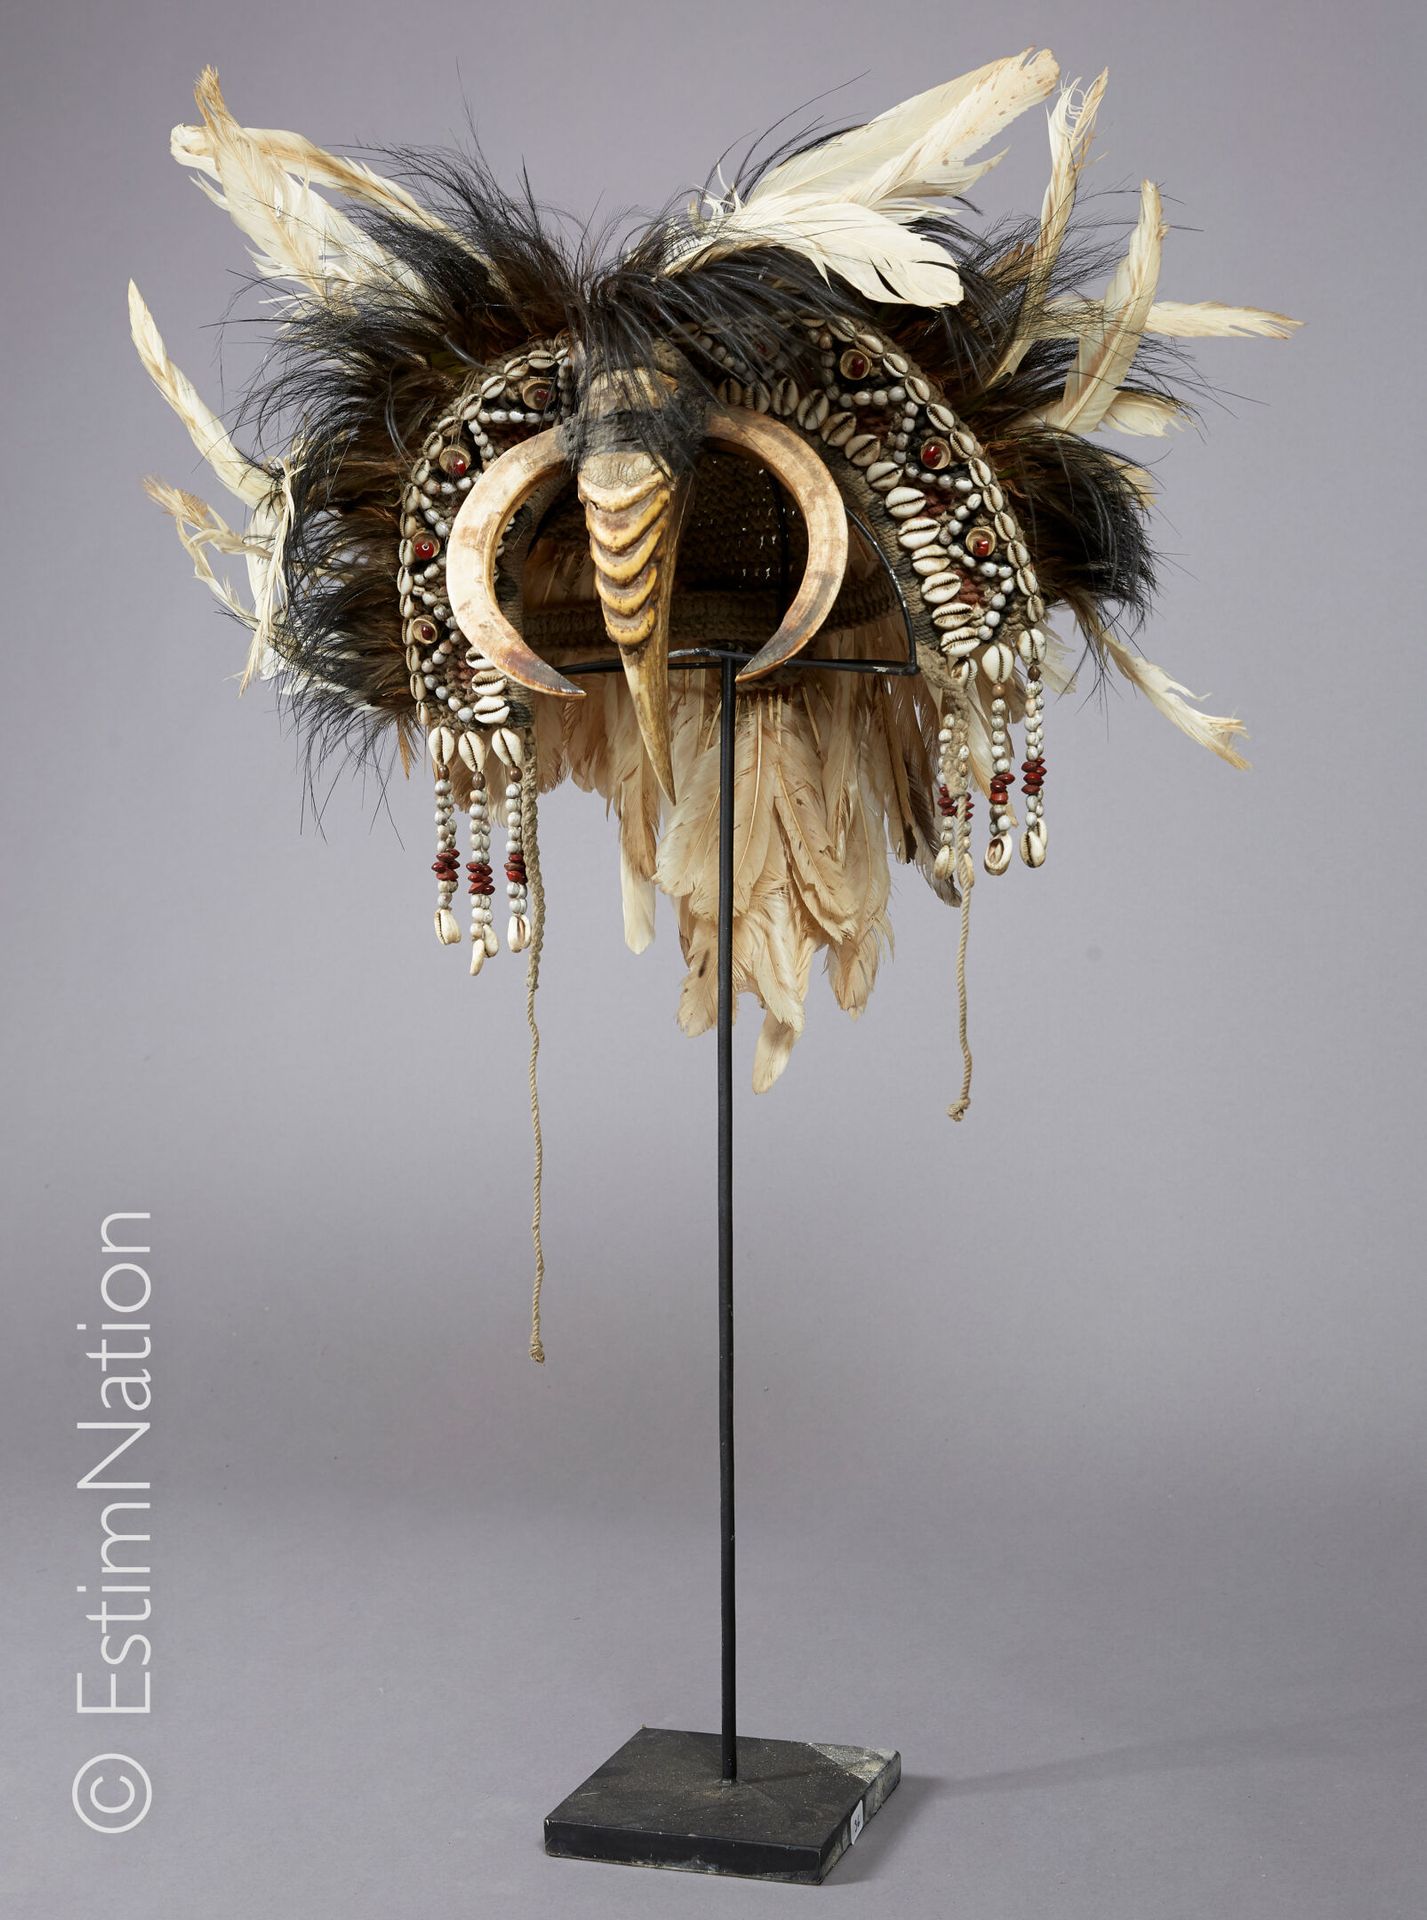 ASMAT - IRIAN JAYA 阿斯玛特-伊里安-贾亚



仪式头饰由多色编织绳制成，上面装饰着咖啡豆壳和白色及红色的种子，中间是一只黄鼠狼的嘴，两边是&hellip;